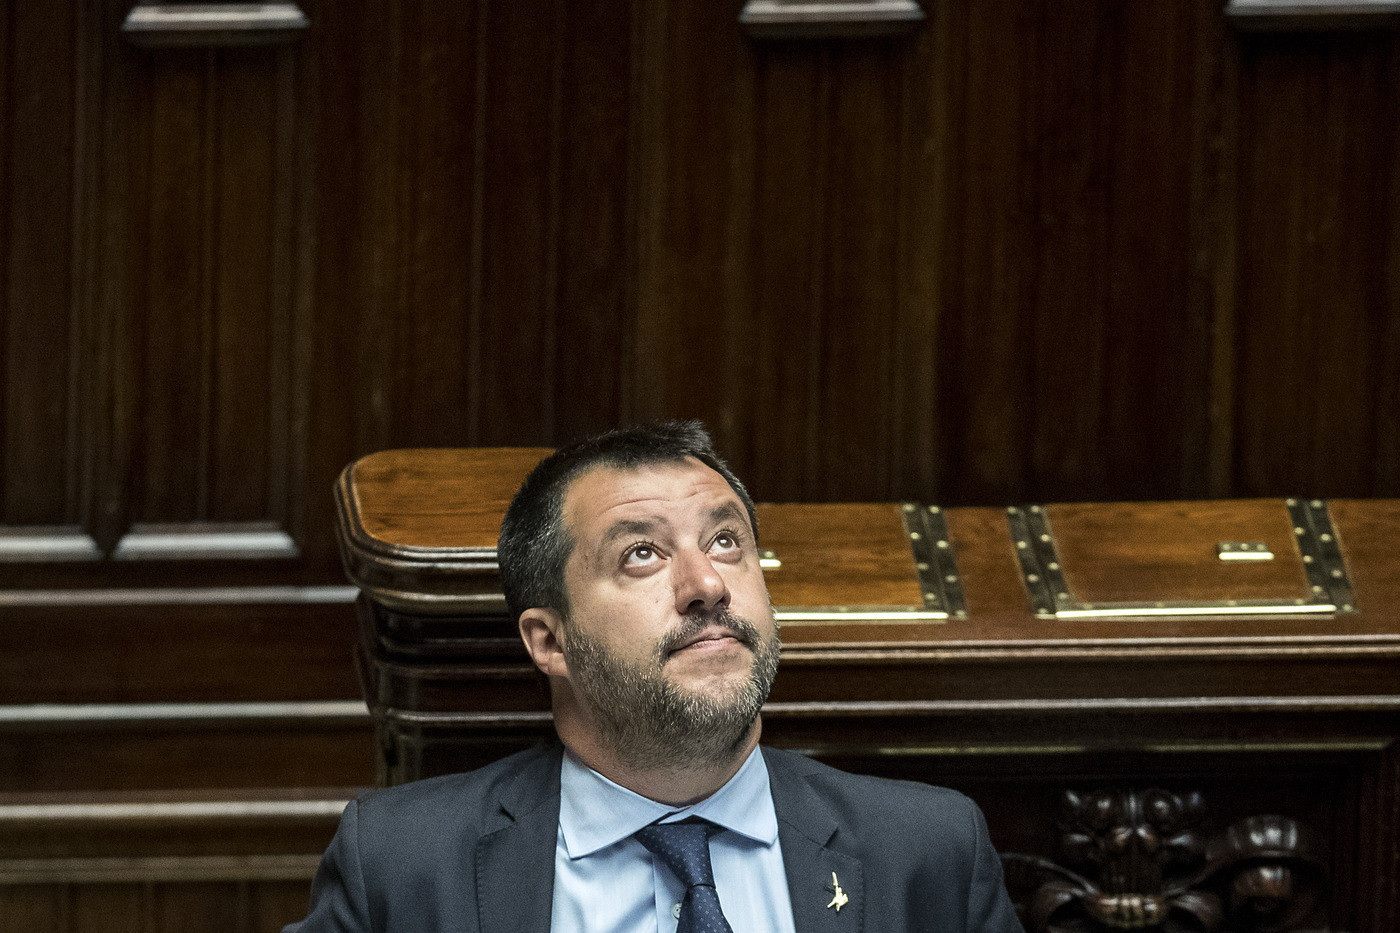 Voli di Stato, la Corte dei conti indaga su Salvini. Ma lui: “Nessuna irregolarità”